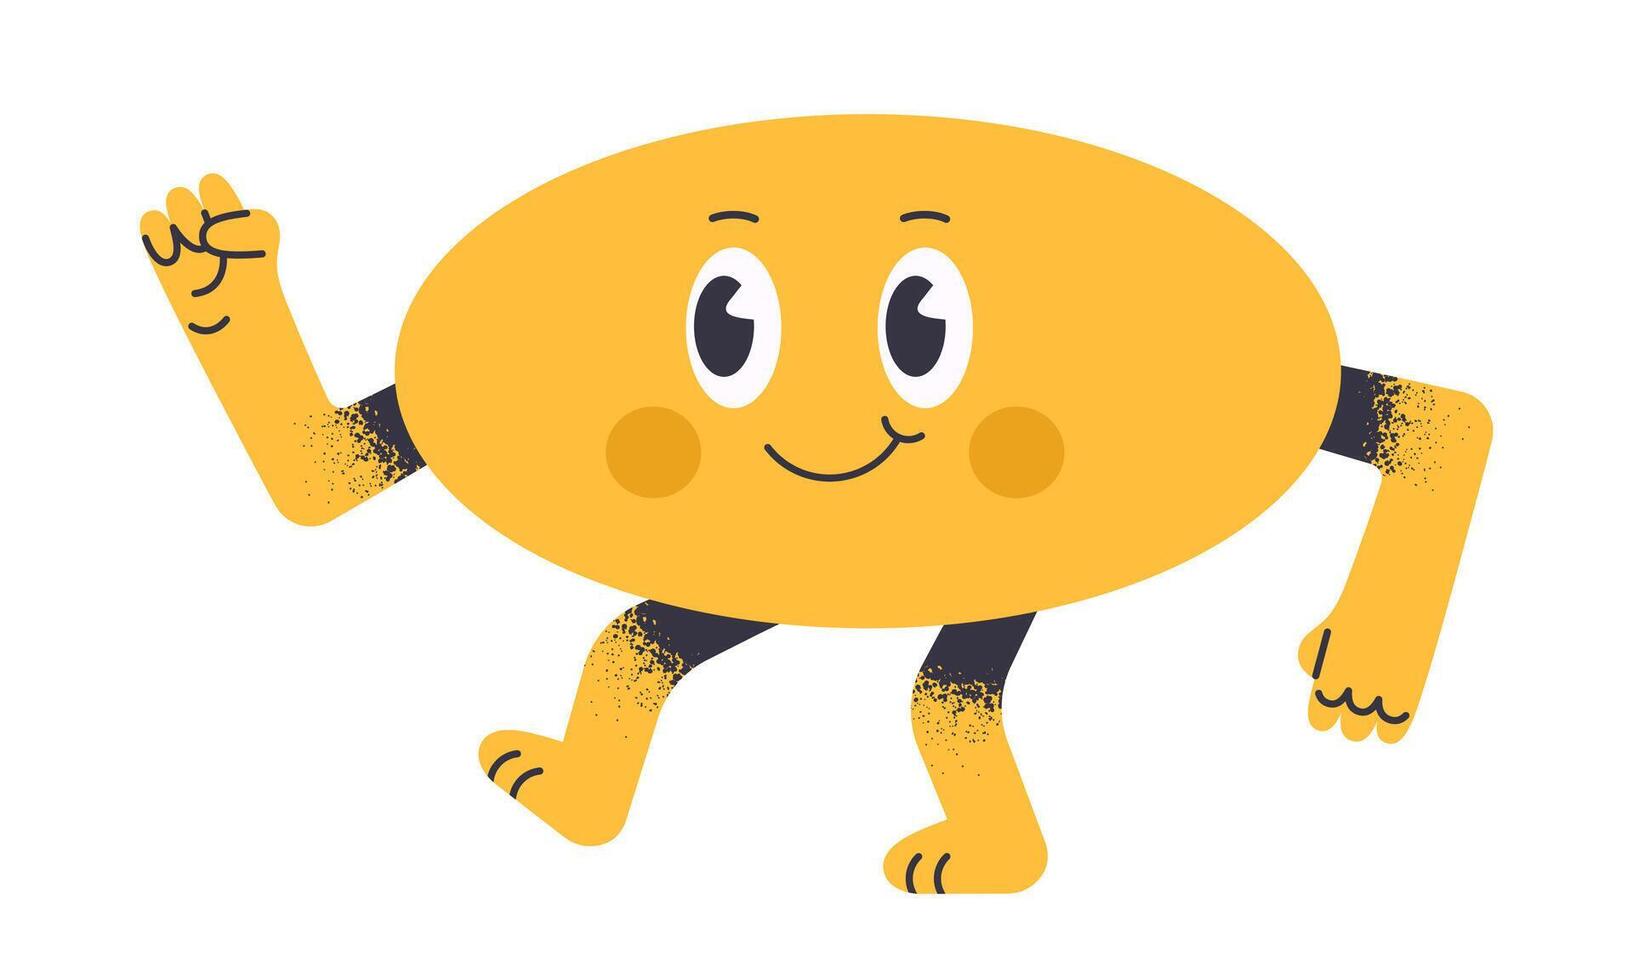 ovaal grappig vorm geven aan. meetkundig mascotte voor wiskunde school- aan het leren, geel abstract figuur karakter met grappig gezicht vlak illustratie. schattig ovaal met grappig emoties vector